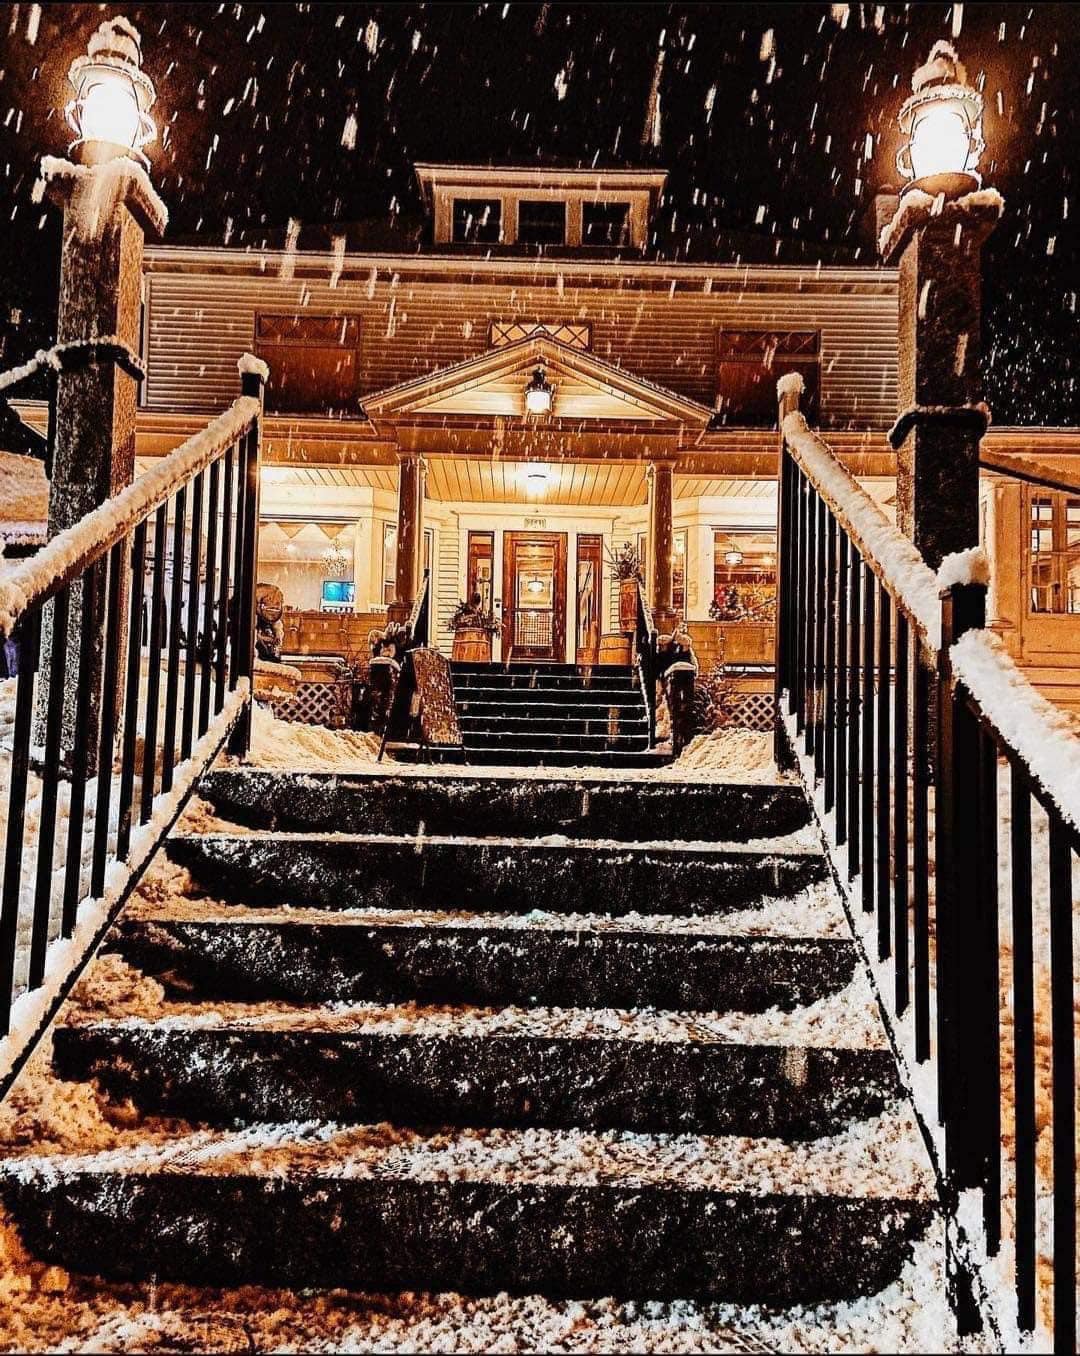 Snowing at Furbish House